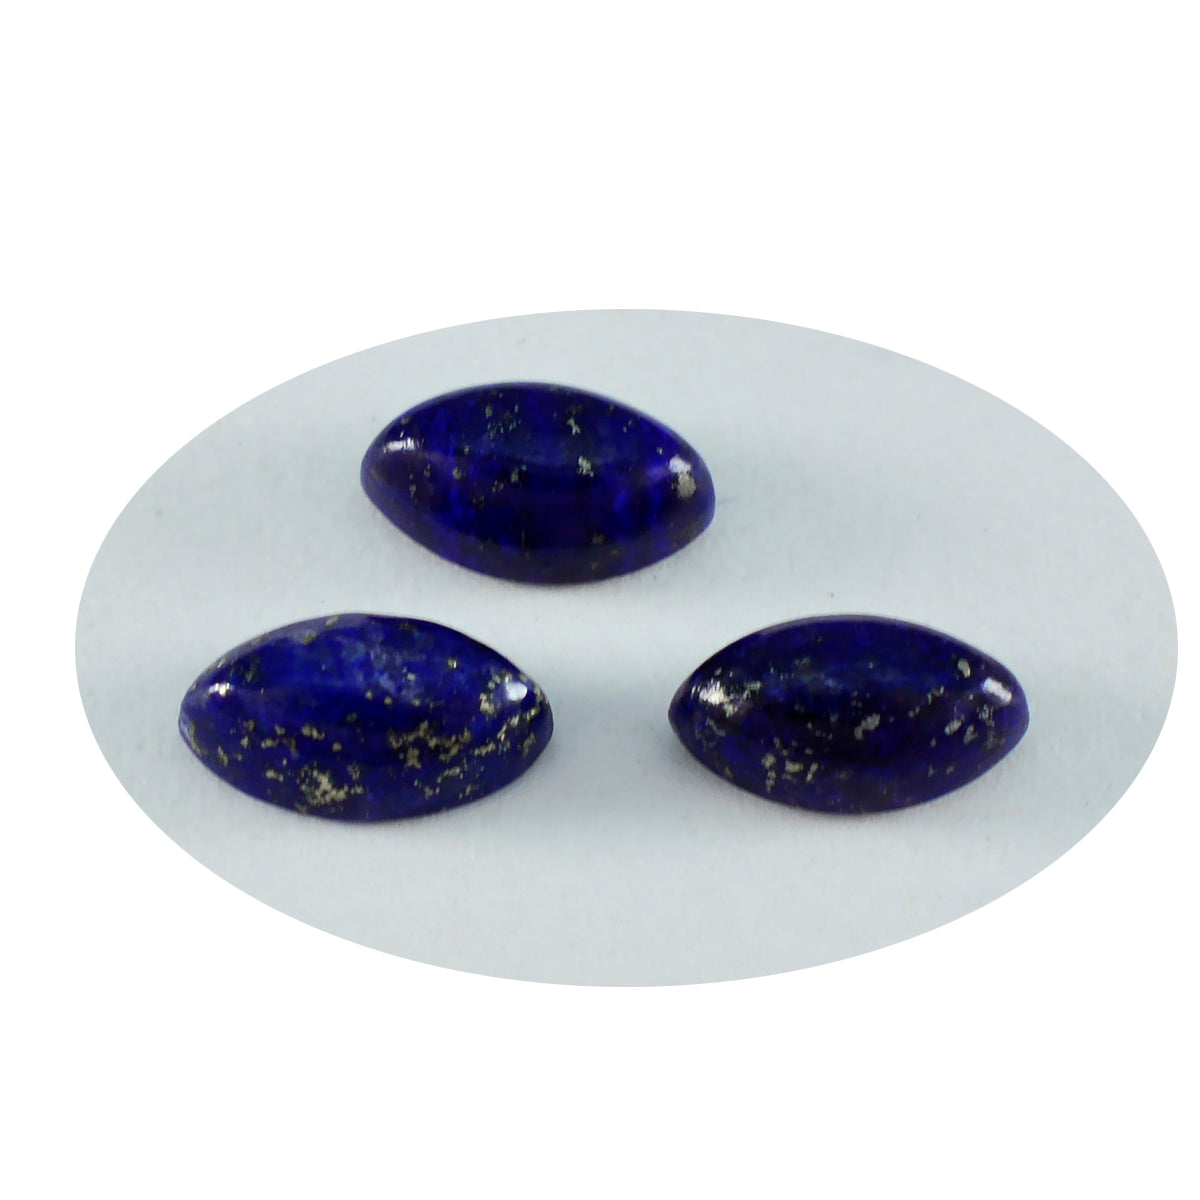 Riyogems 1 Stück blauer Lapislazuli-Cabochon, 6 x 12 mm, Marquise-Form, hübscher Qualitätsstein